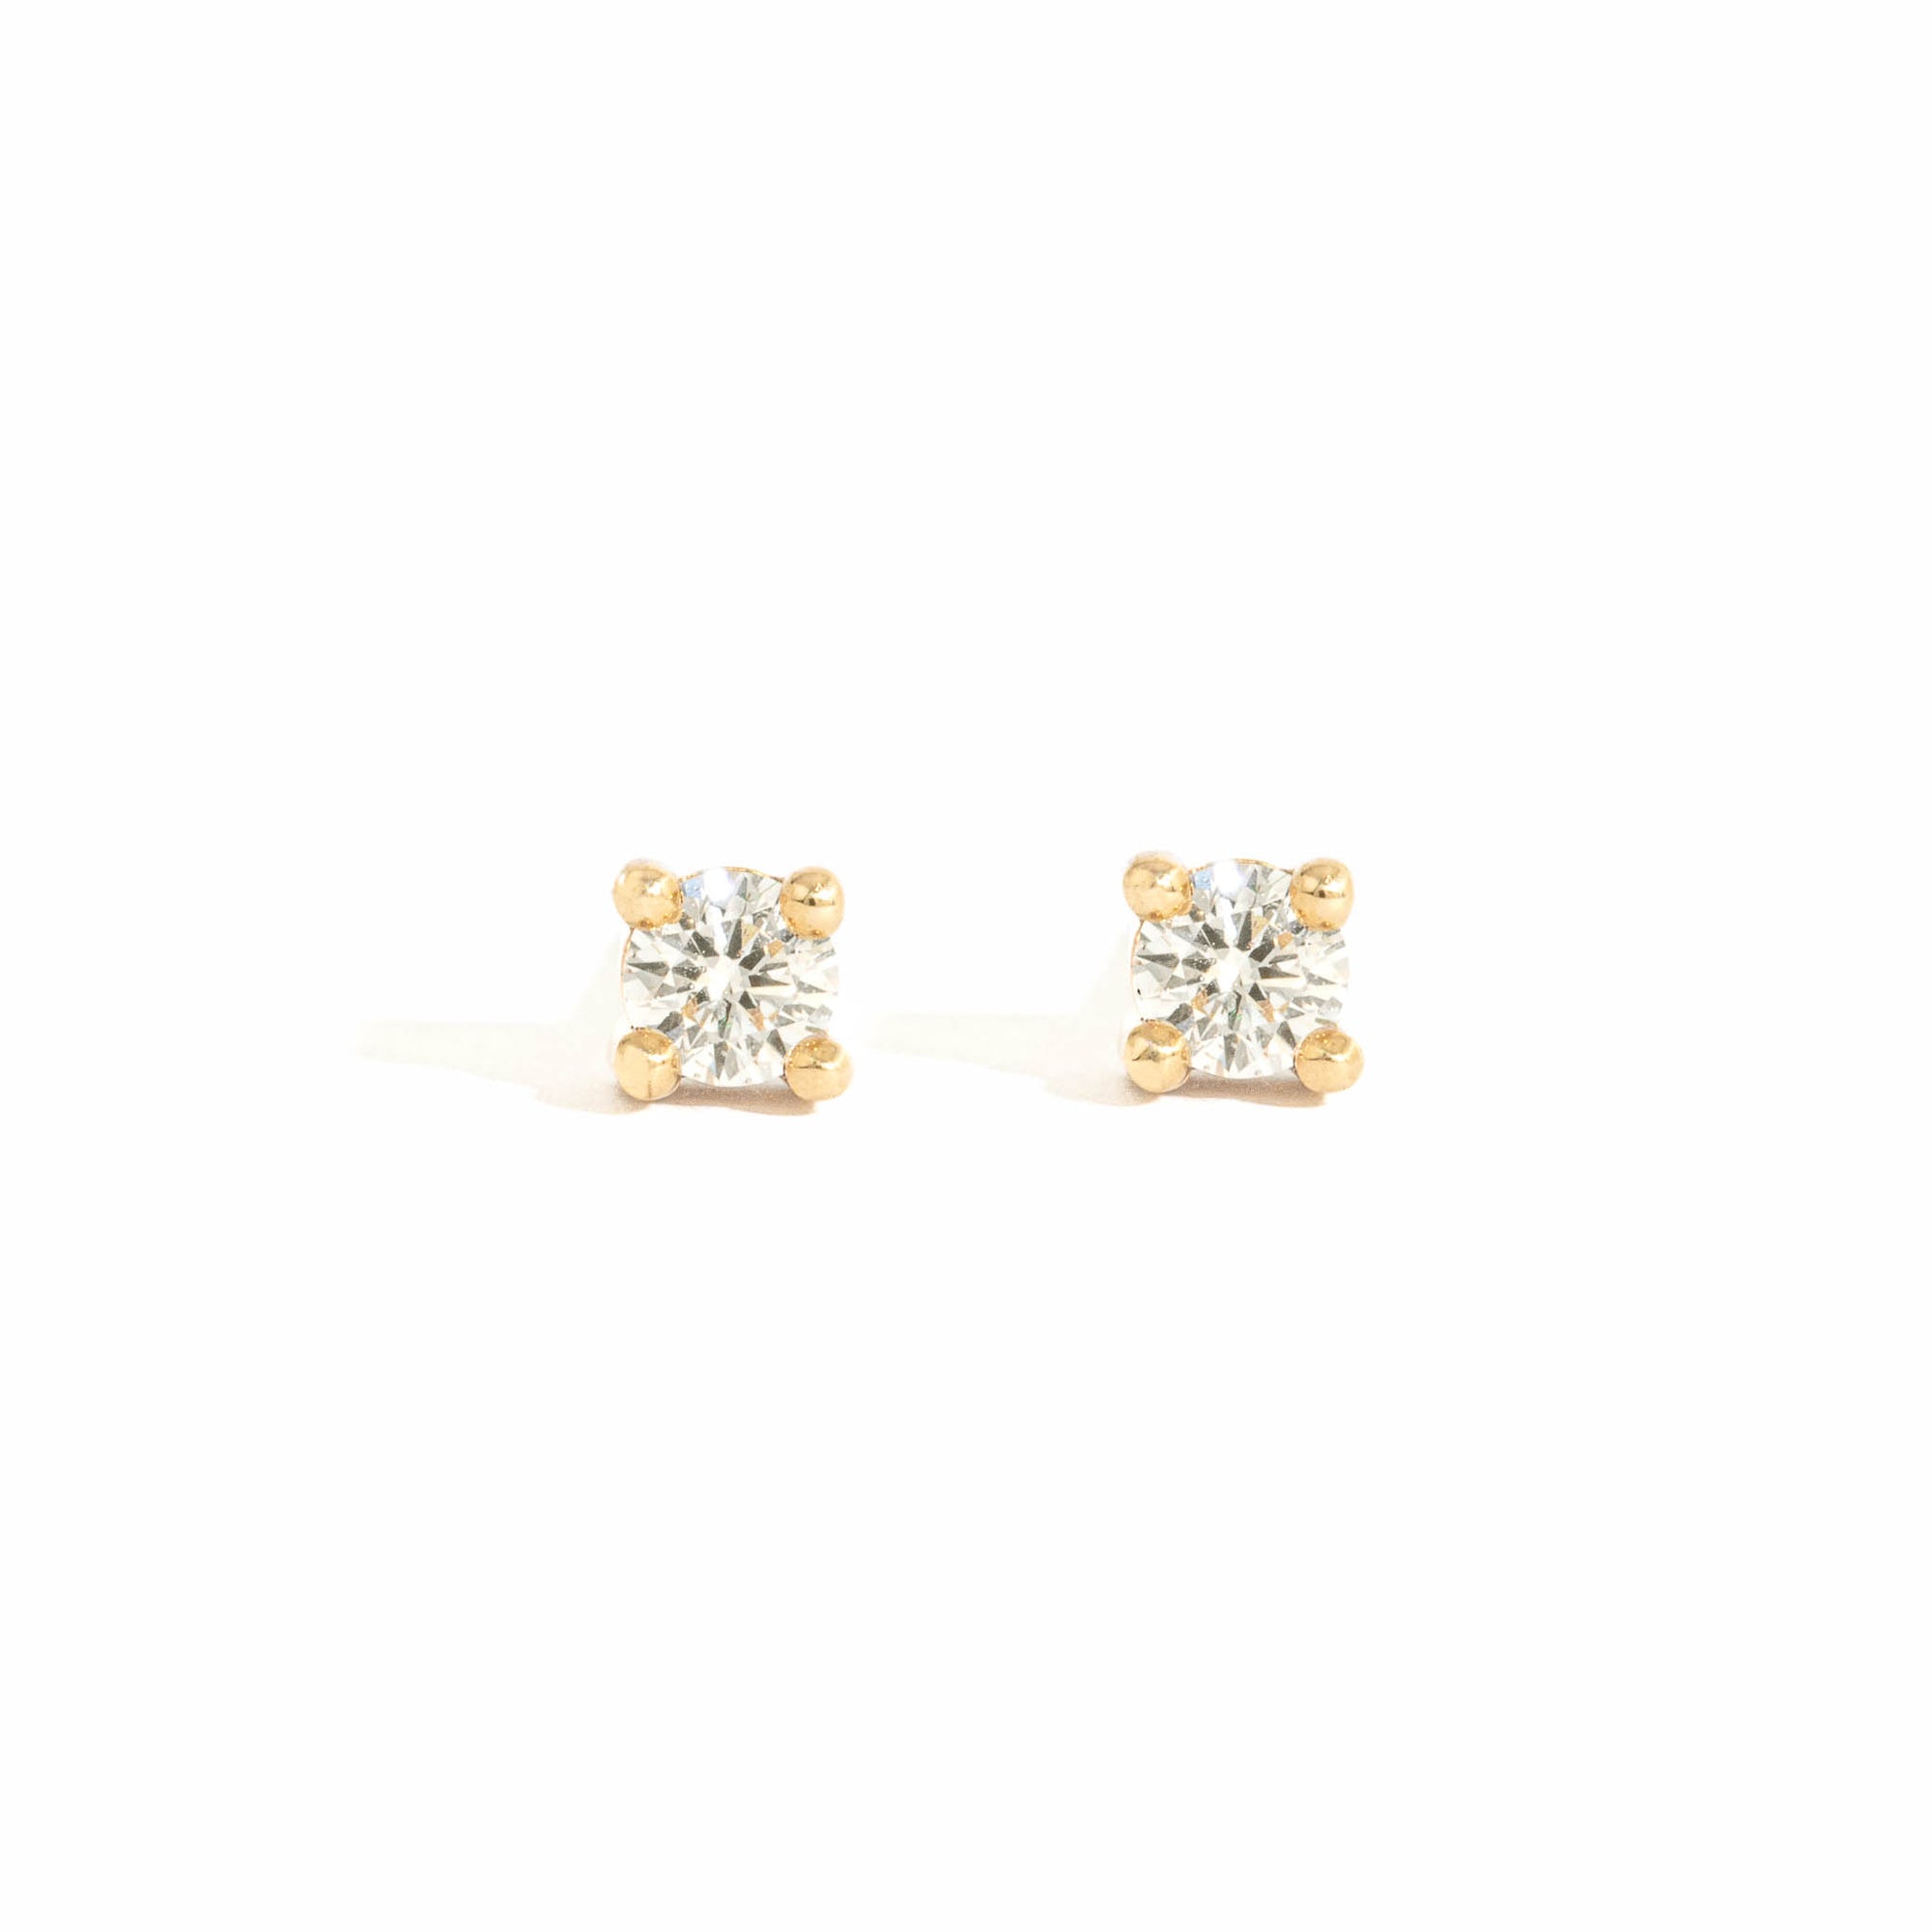 Diamond Earrings in 9 Carat Yellow Gold